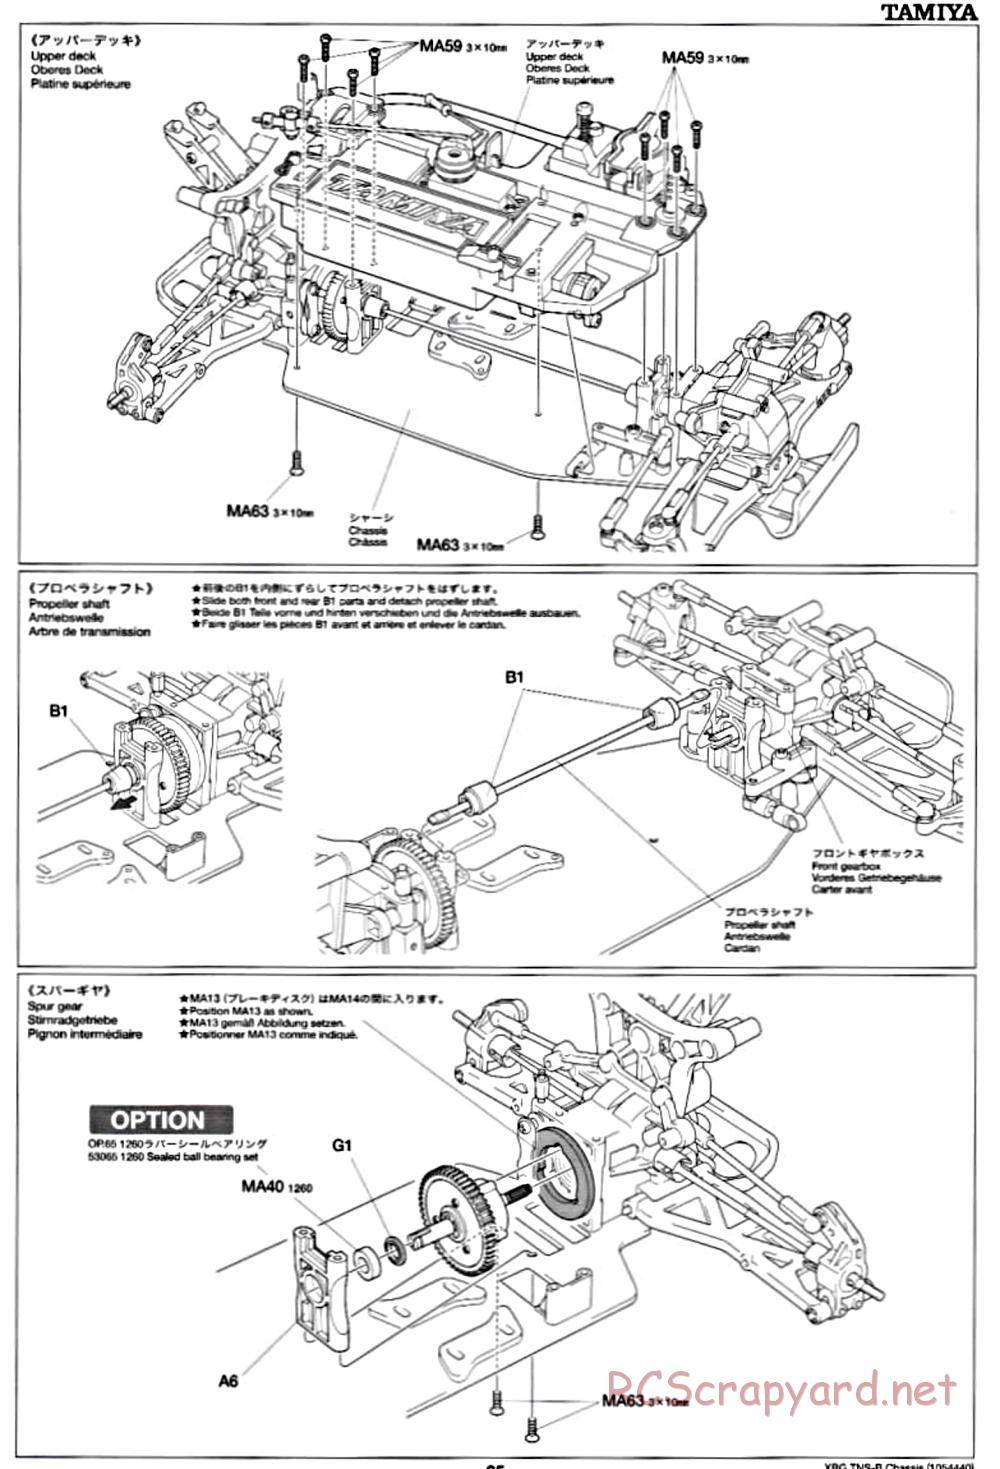 Tamiya - TNS-B Chassis - Manual - Page 25